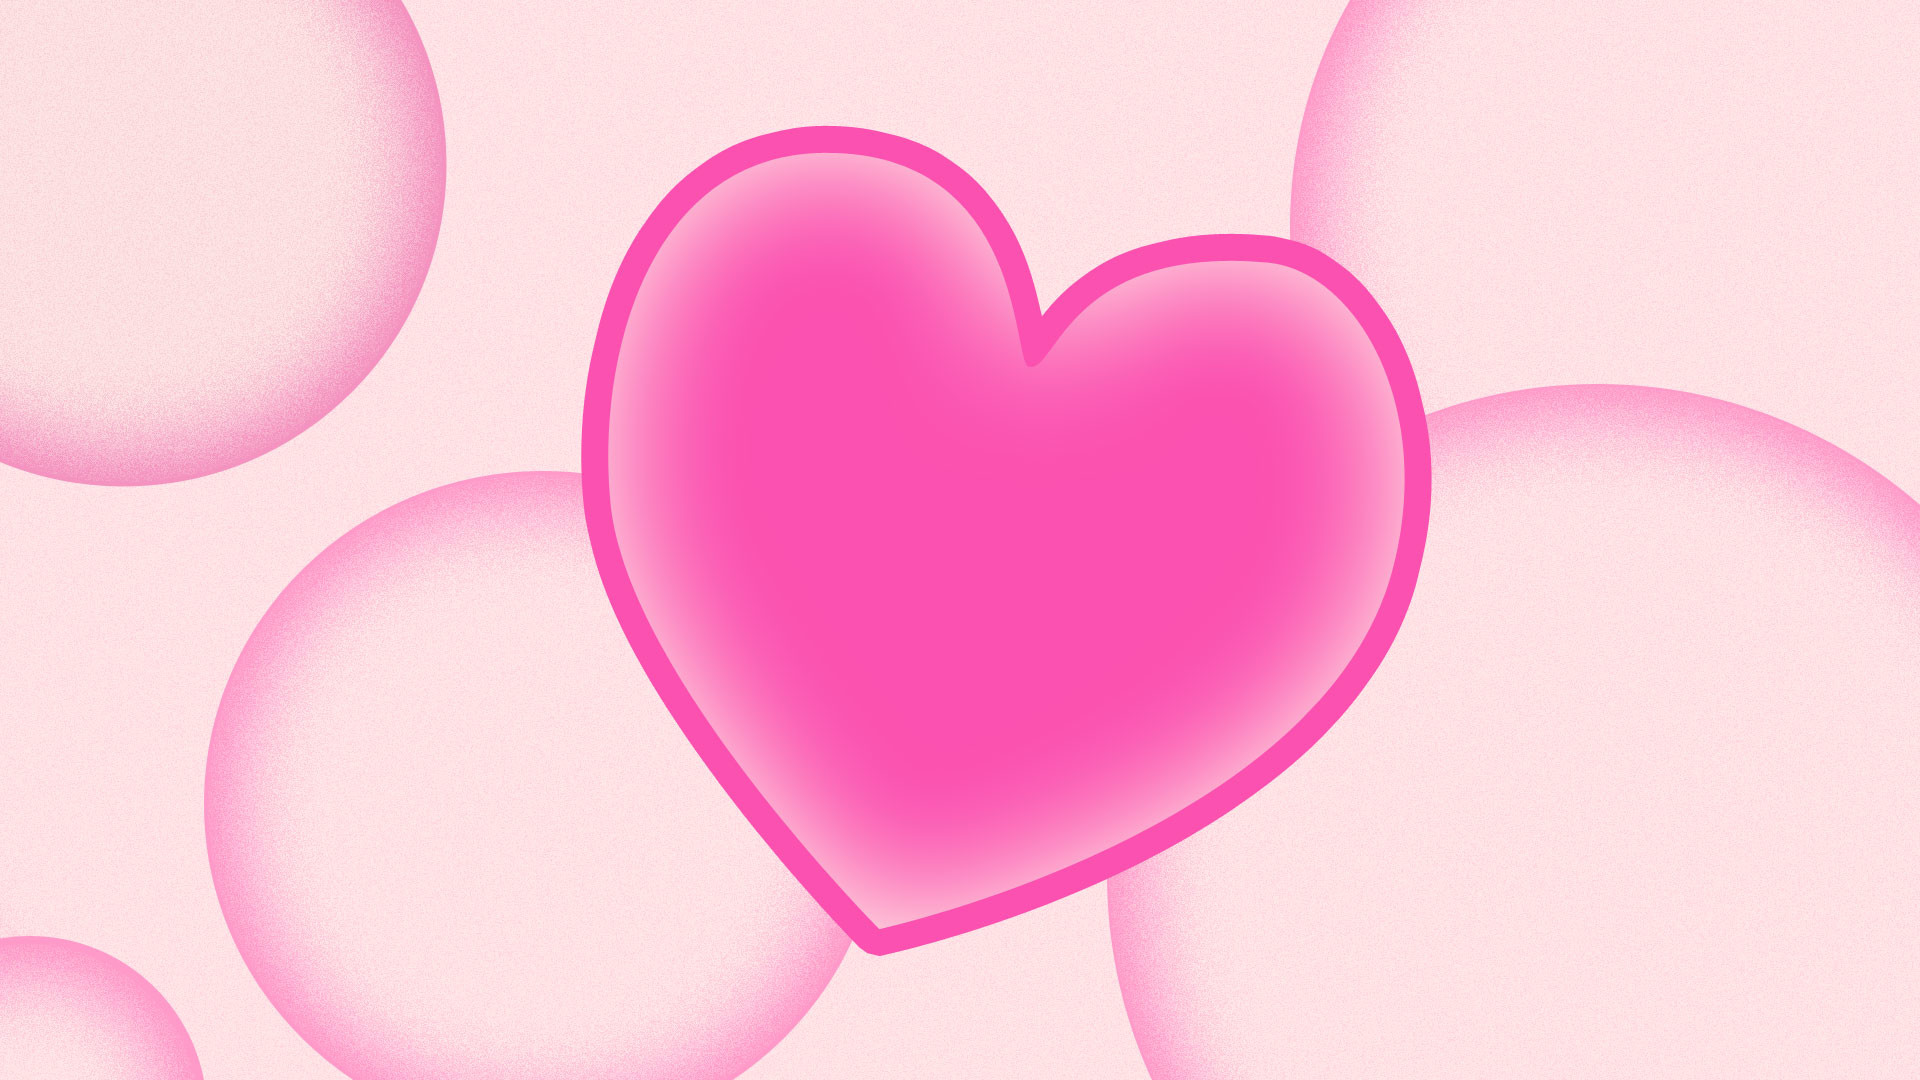 Pink Hearts Wallpaper Cute Photos Heart 23104wall.jpg